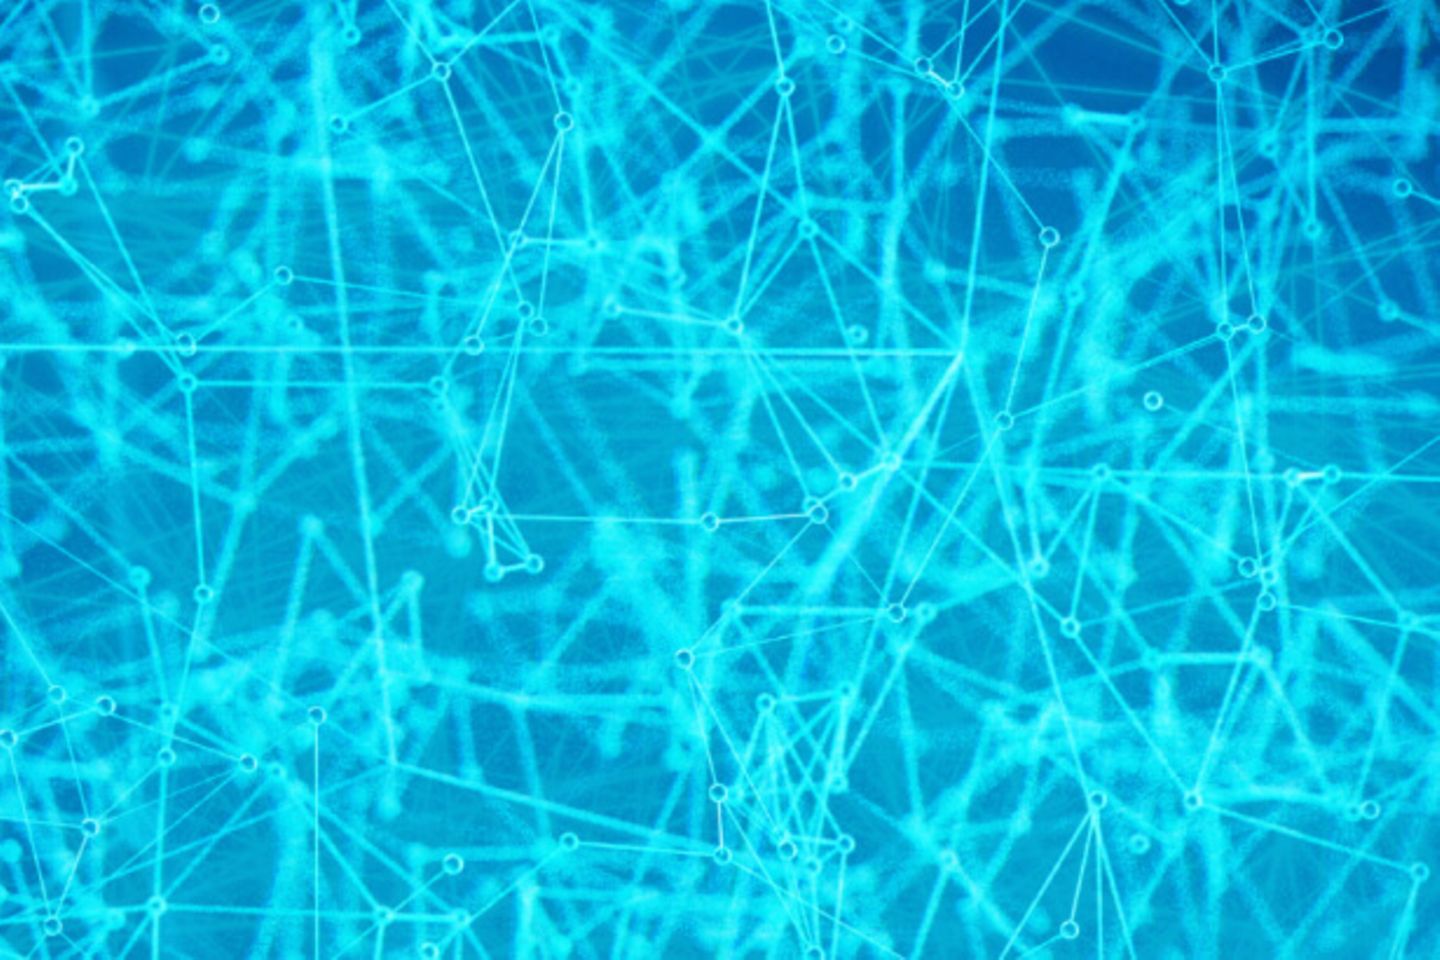 Hellblaue Netzstruktur auf dunkelblauem Hintergrund